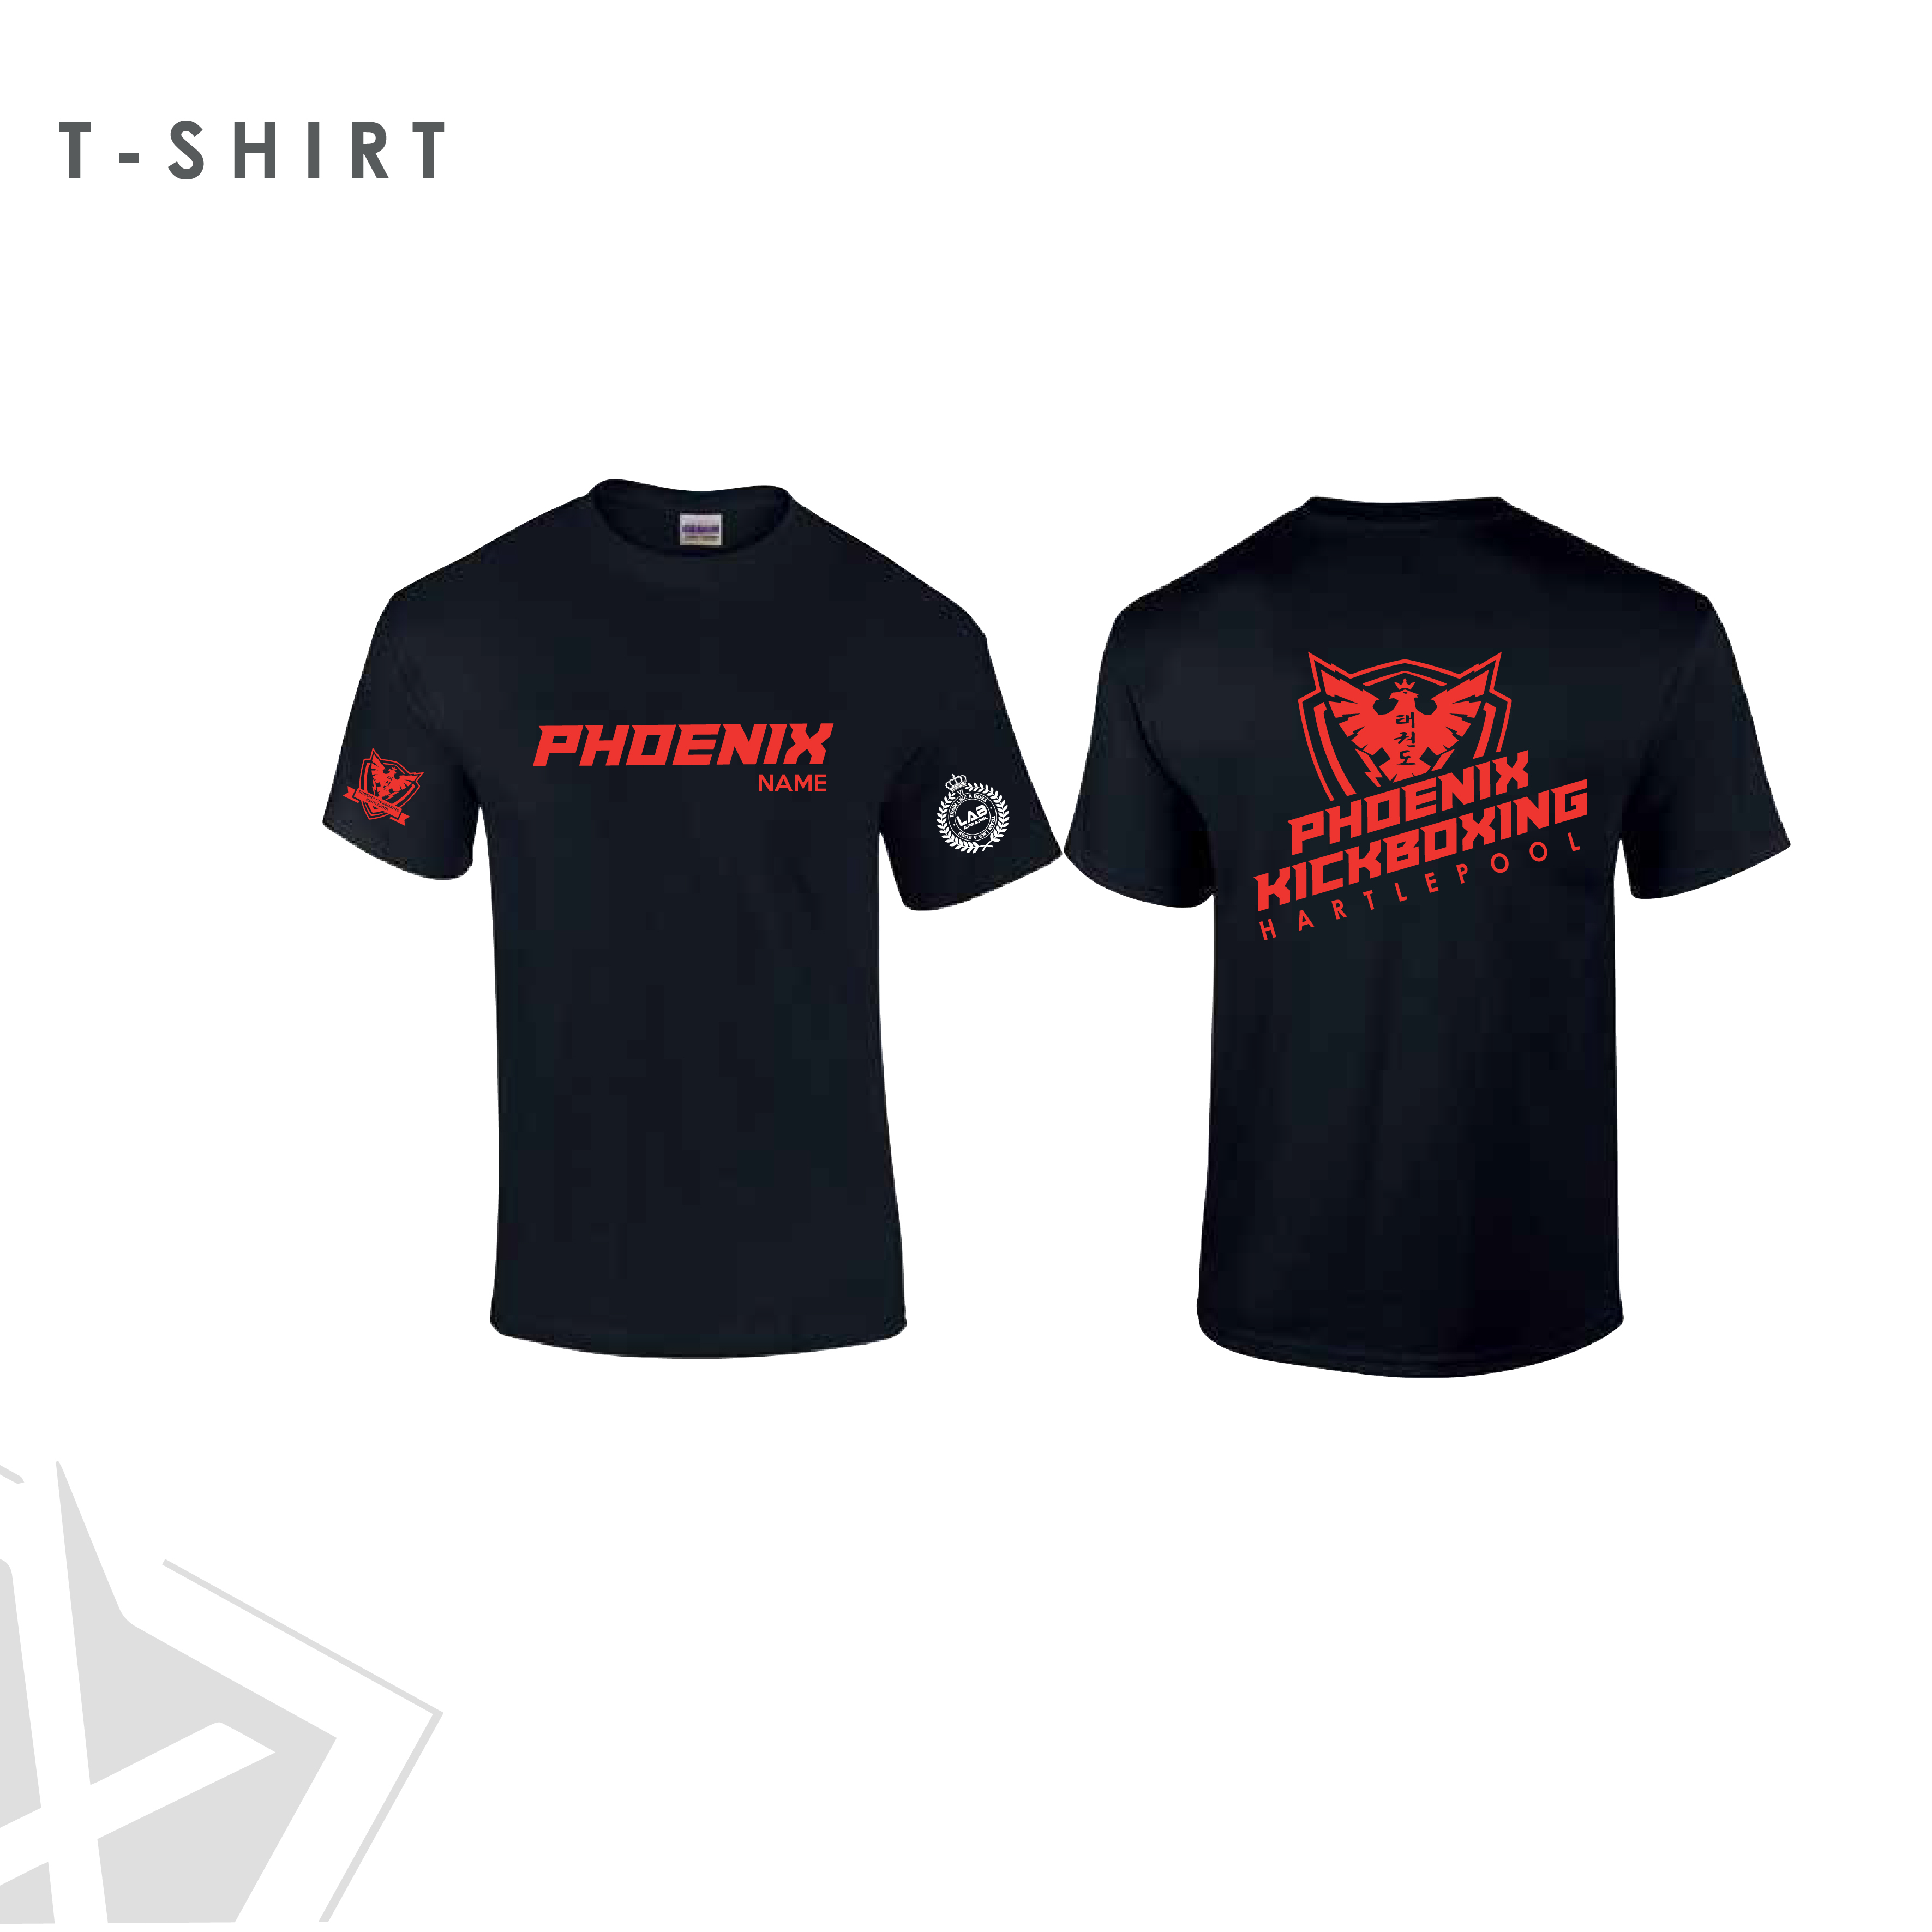 Phoenix Kickboxing T-shirt Kids